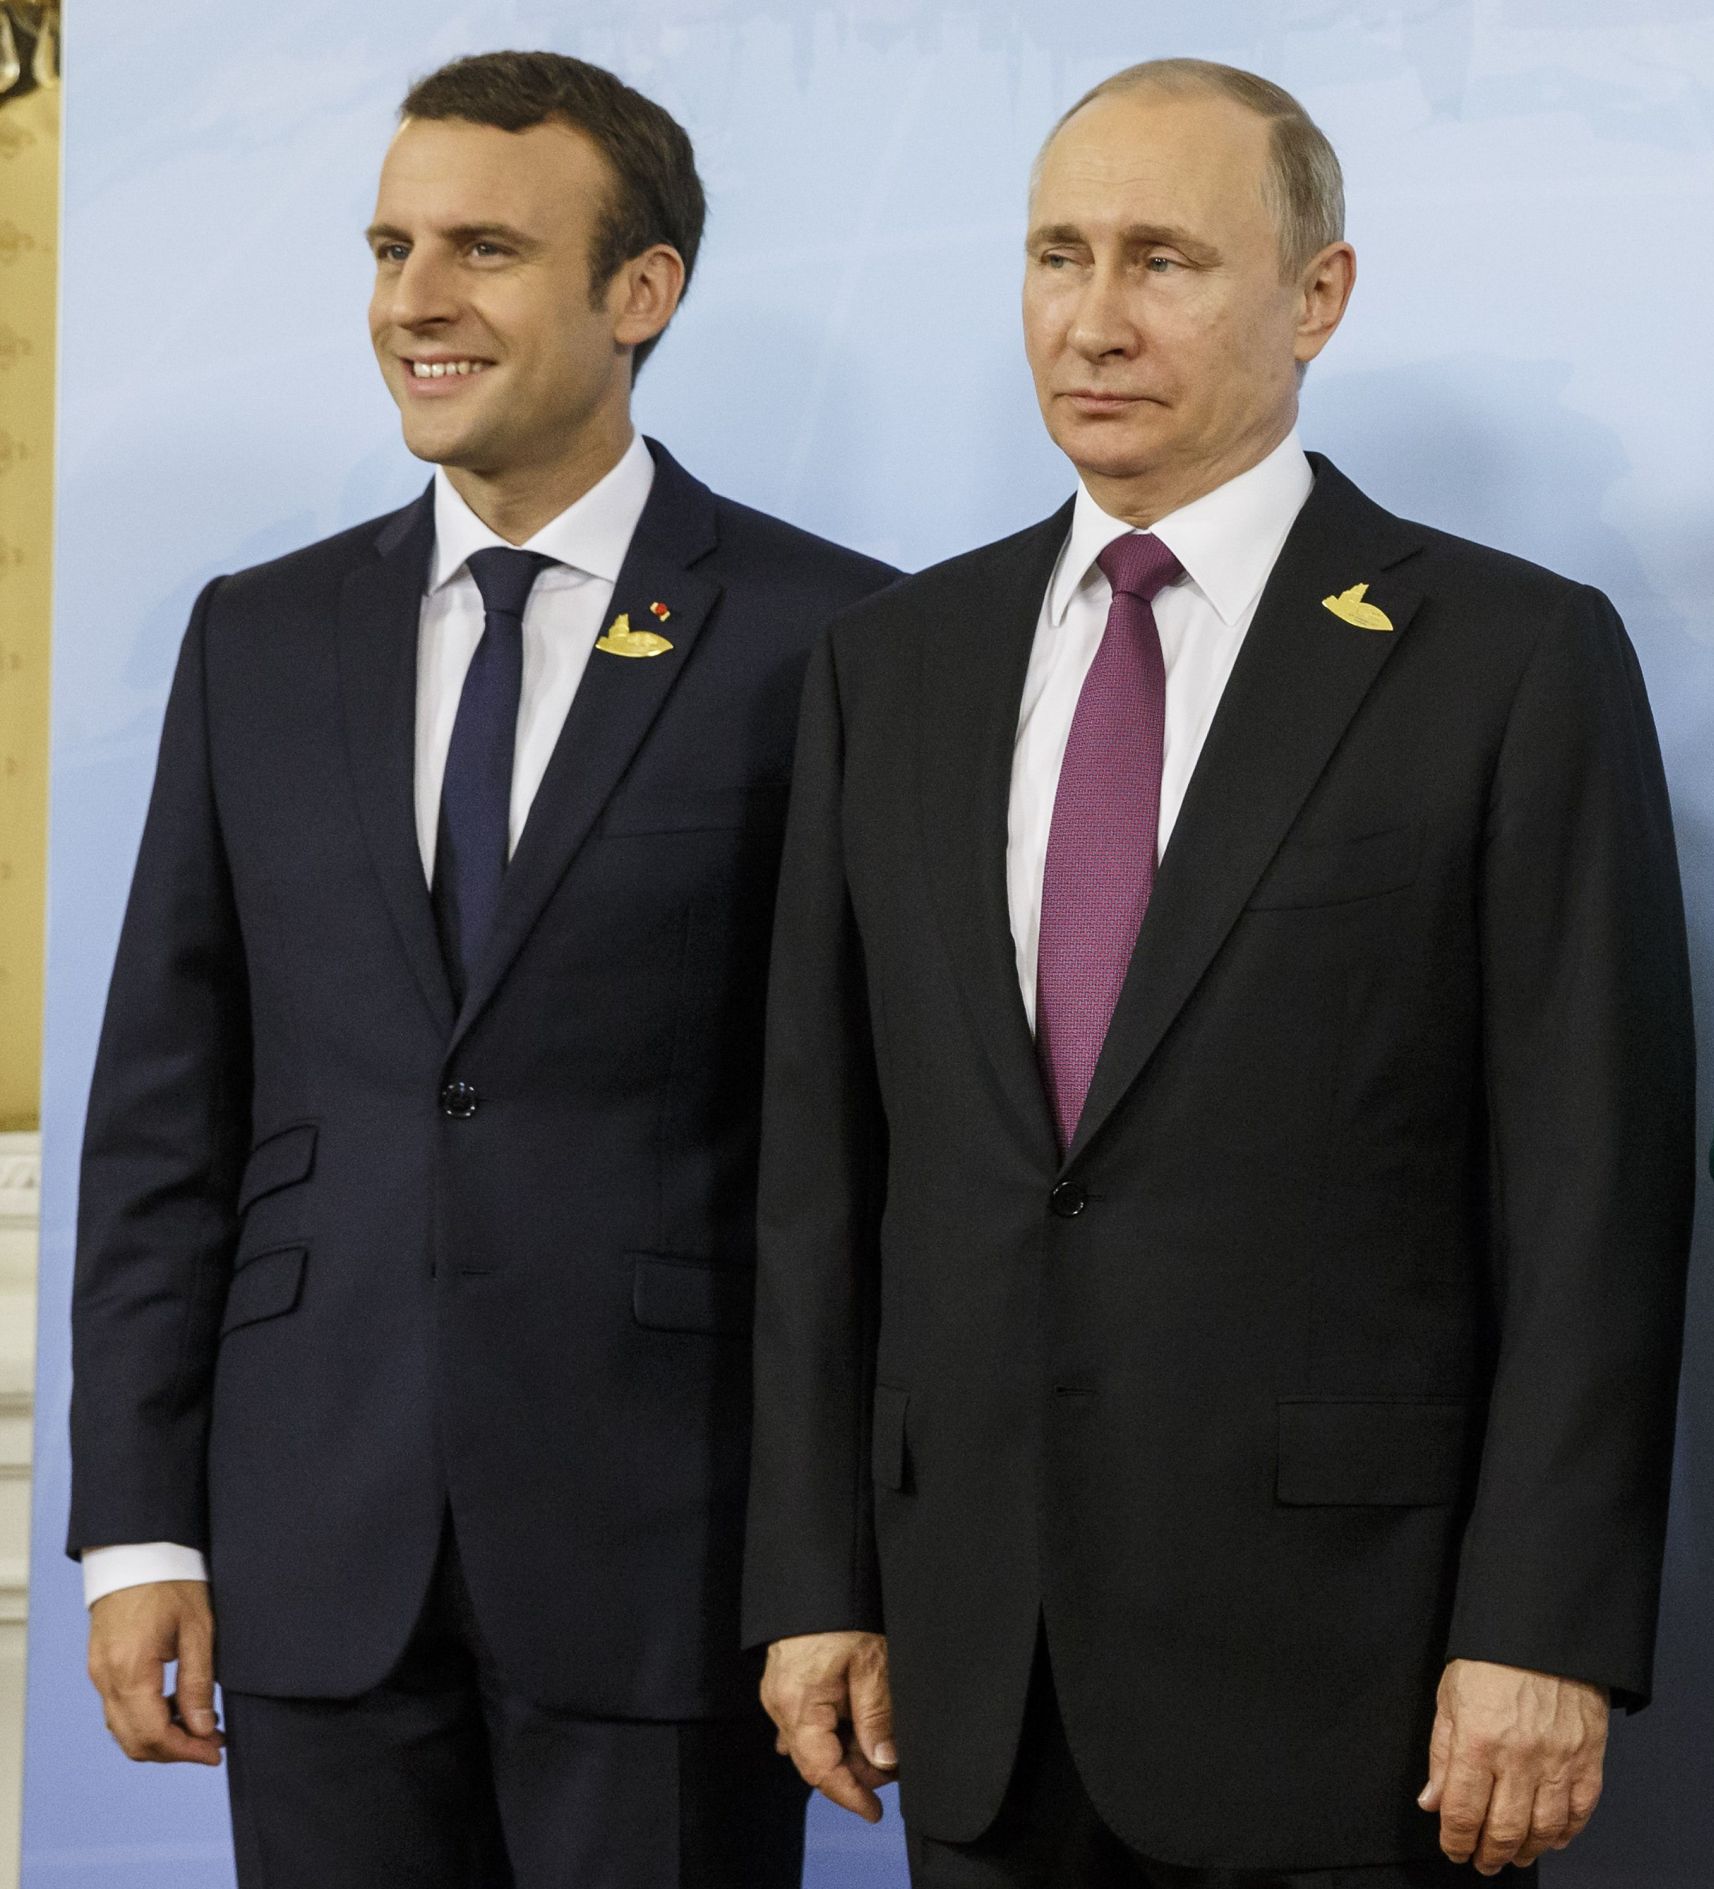 Eманюел Макрон и Владимир Путин са най-одобряваните лидери